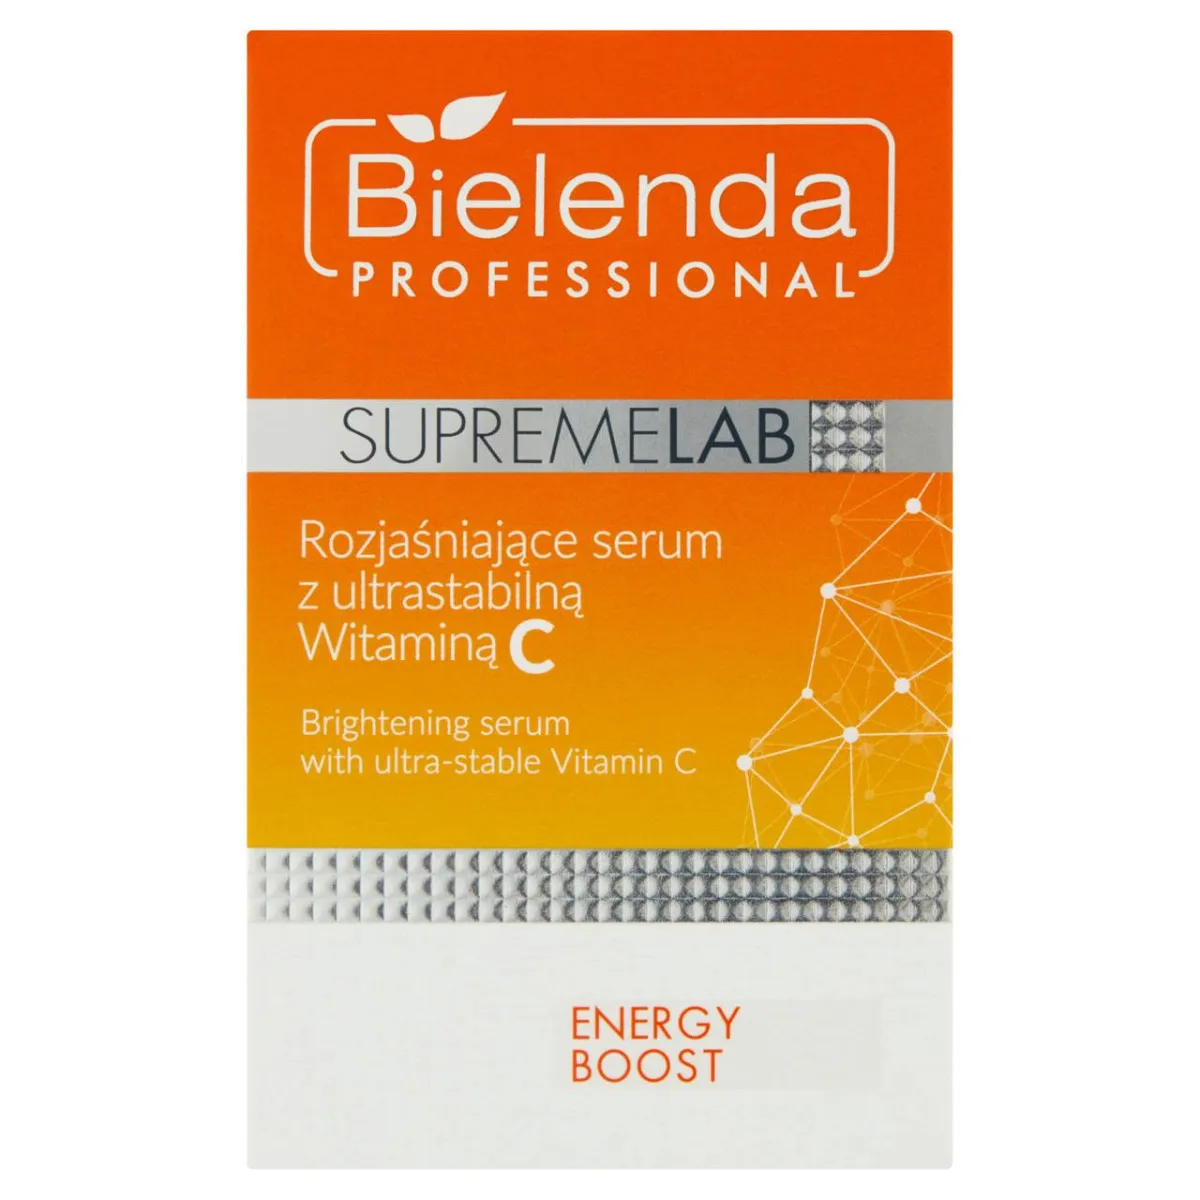 Bielenda Professional SupremeLab, rozjaśniające serum z ultrastabilną witaminą C, 15 ml 